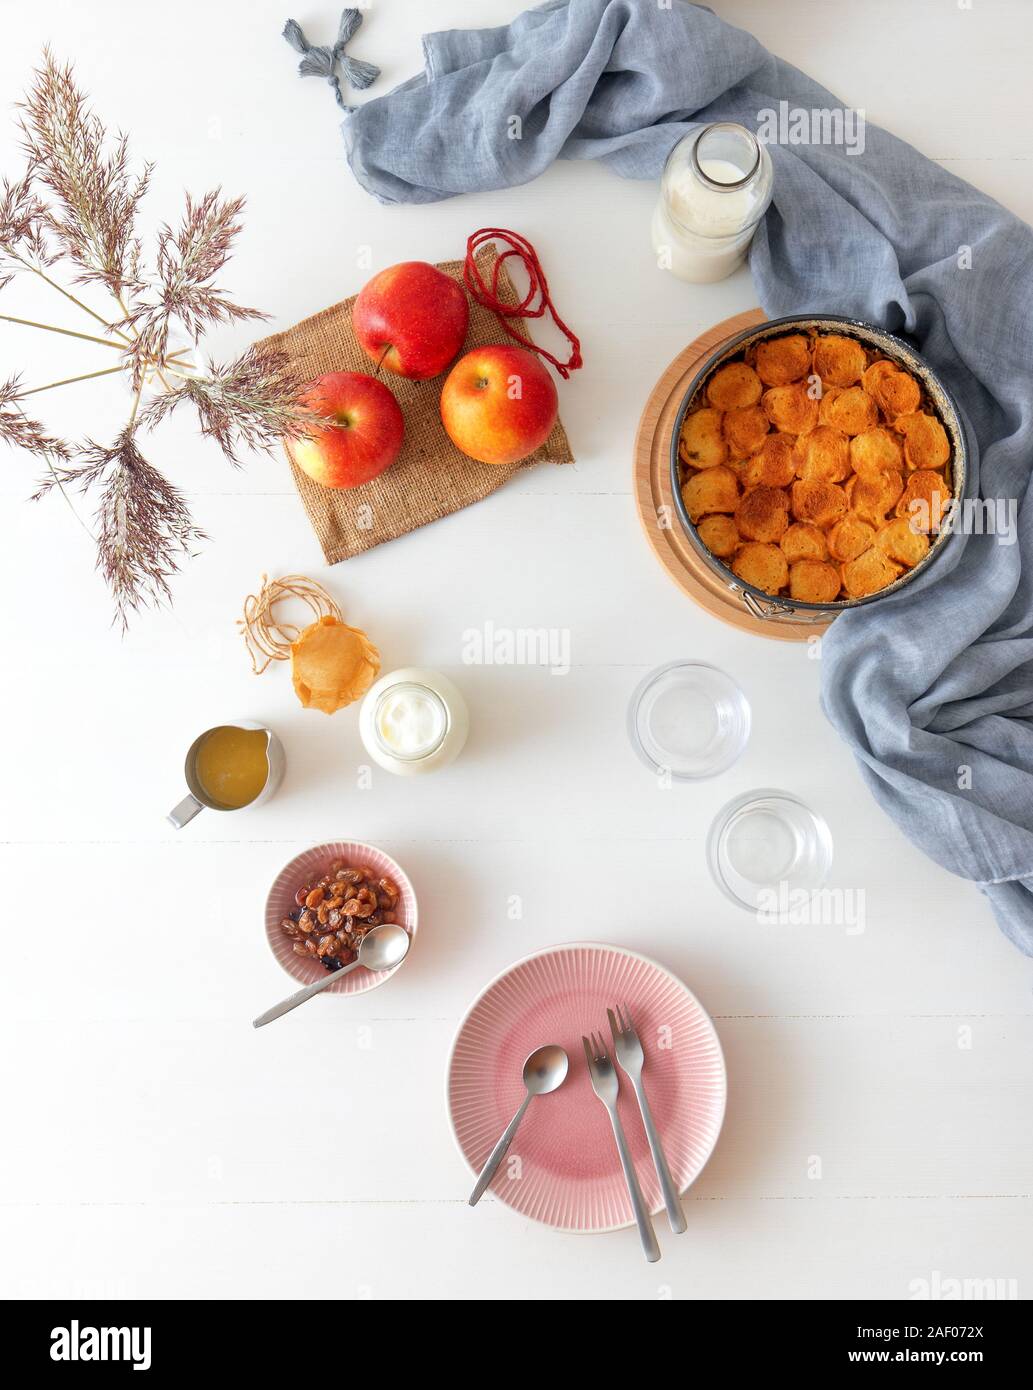 Weiße Holztisch mit Apple Brot und Butter Pudding, jar mit saurer Sahne, Glas Milch, Hintergrund mit ein paar Äpfel und Vase mit trockenen gra eingerichtet Stockfoto